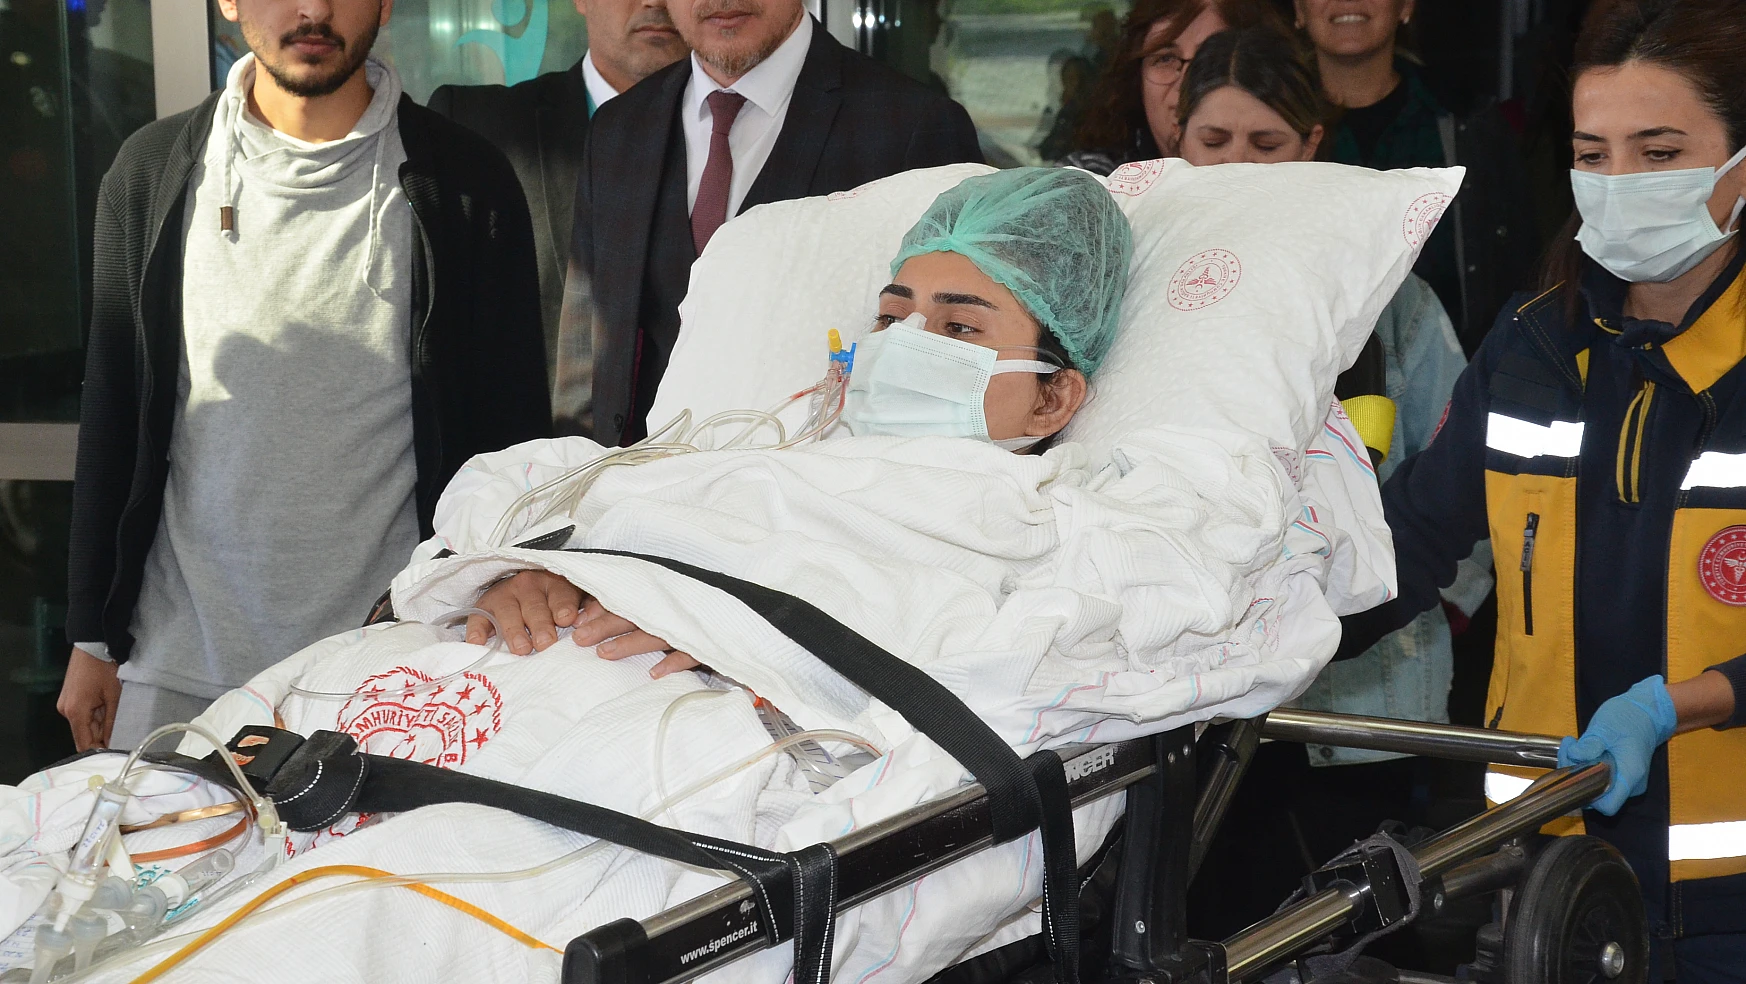 Karaman'da silahla yaralanan hemşire Konya'ya sevk edildi